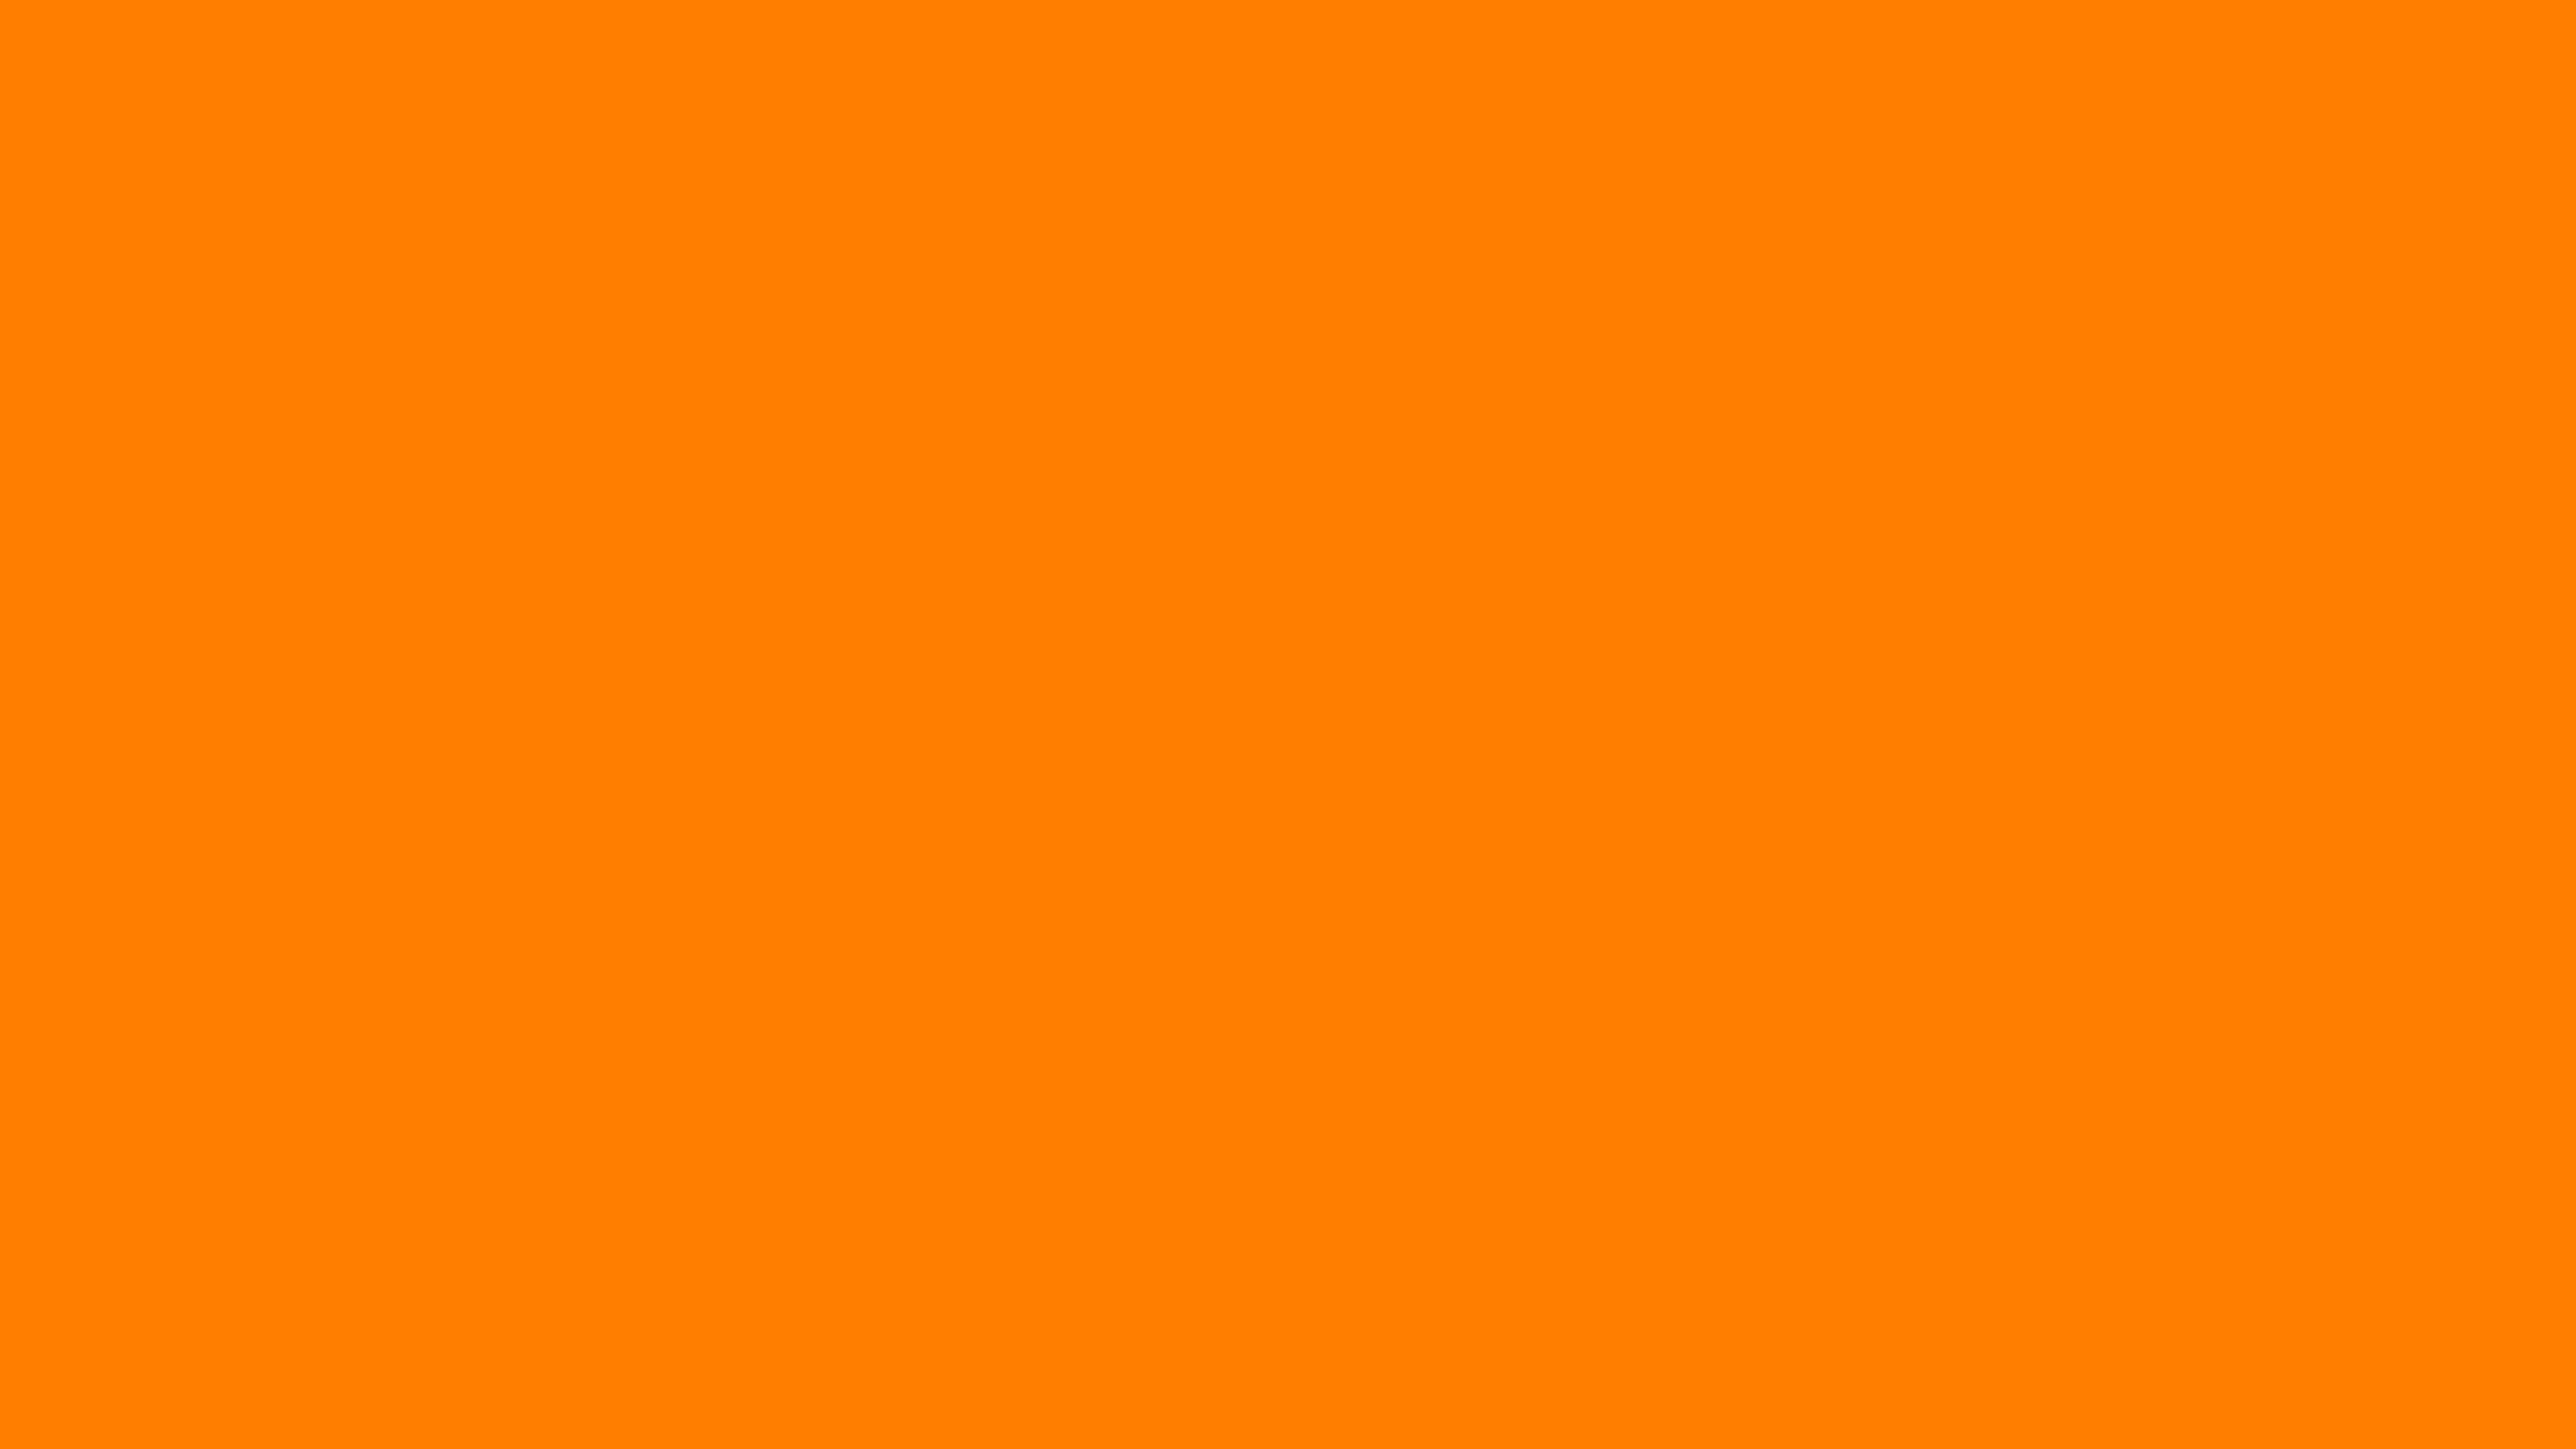 Nền màu cam đậm: Khám phá hình nền màu cam đậm, làm cho màn hình của bạn trở nên nổi bật và thu hút hơn bao giờ hết. Một màu sắc đơn giản nhưng ấm áp và sang trọng, tạo nên sự tươi mới cho không gian làm việc hoặc giải trí của bạn.